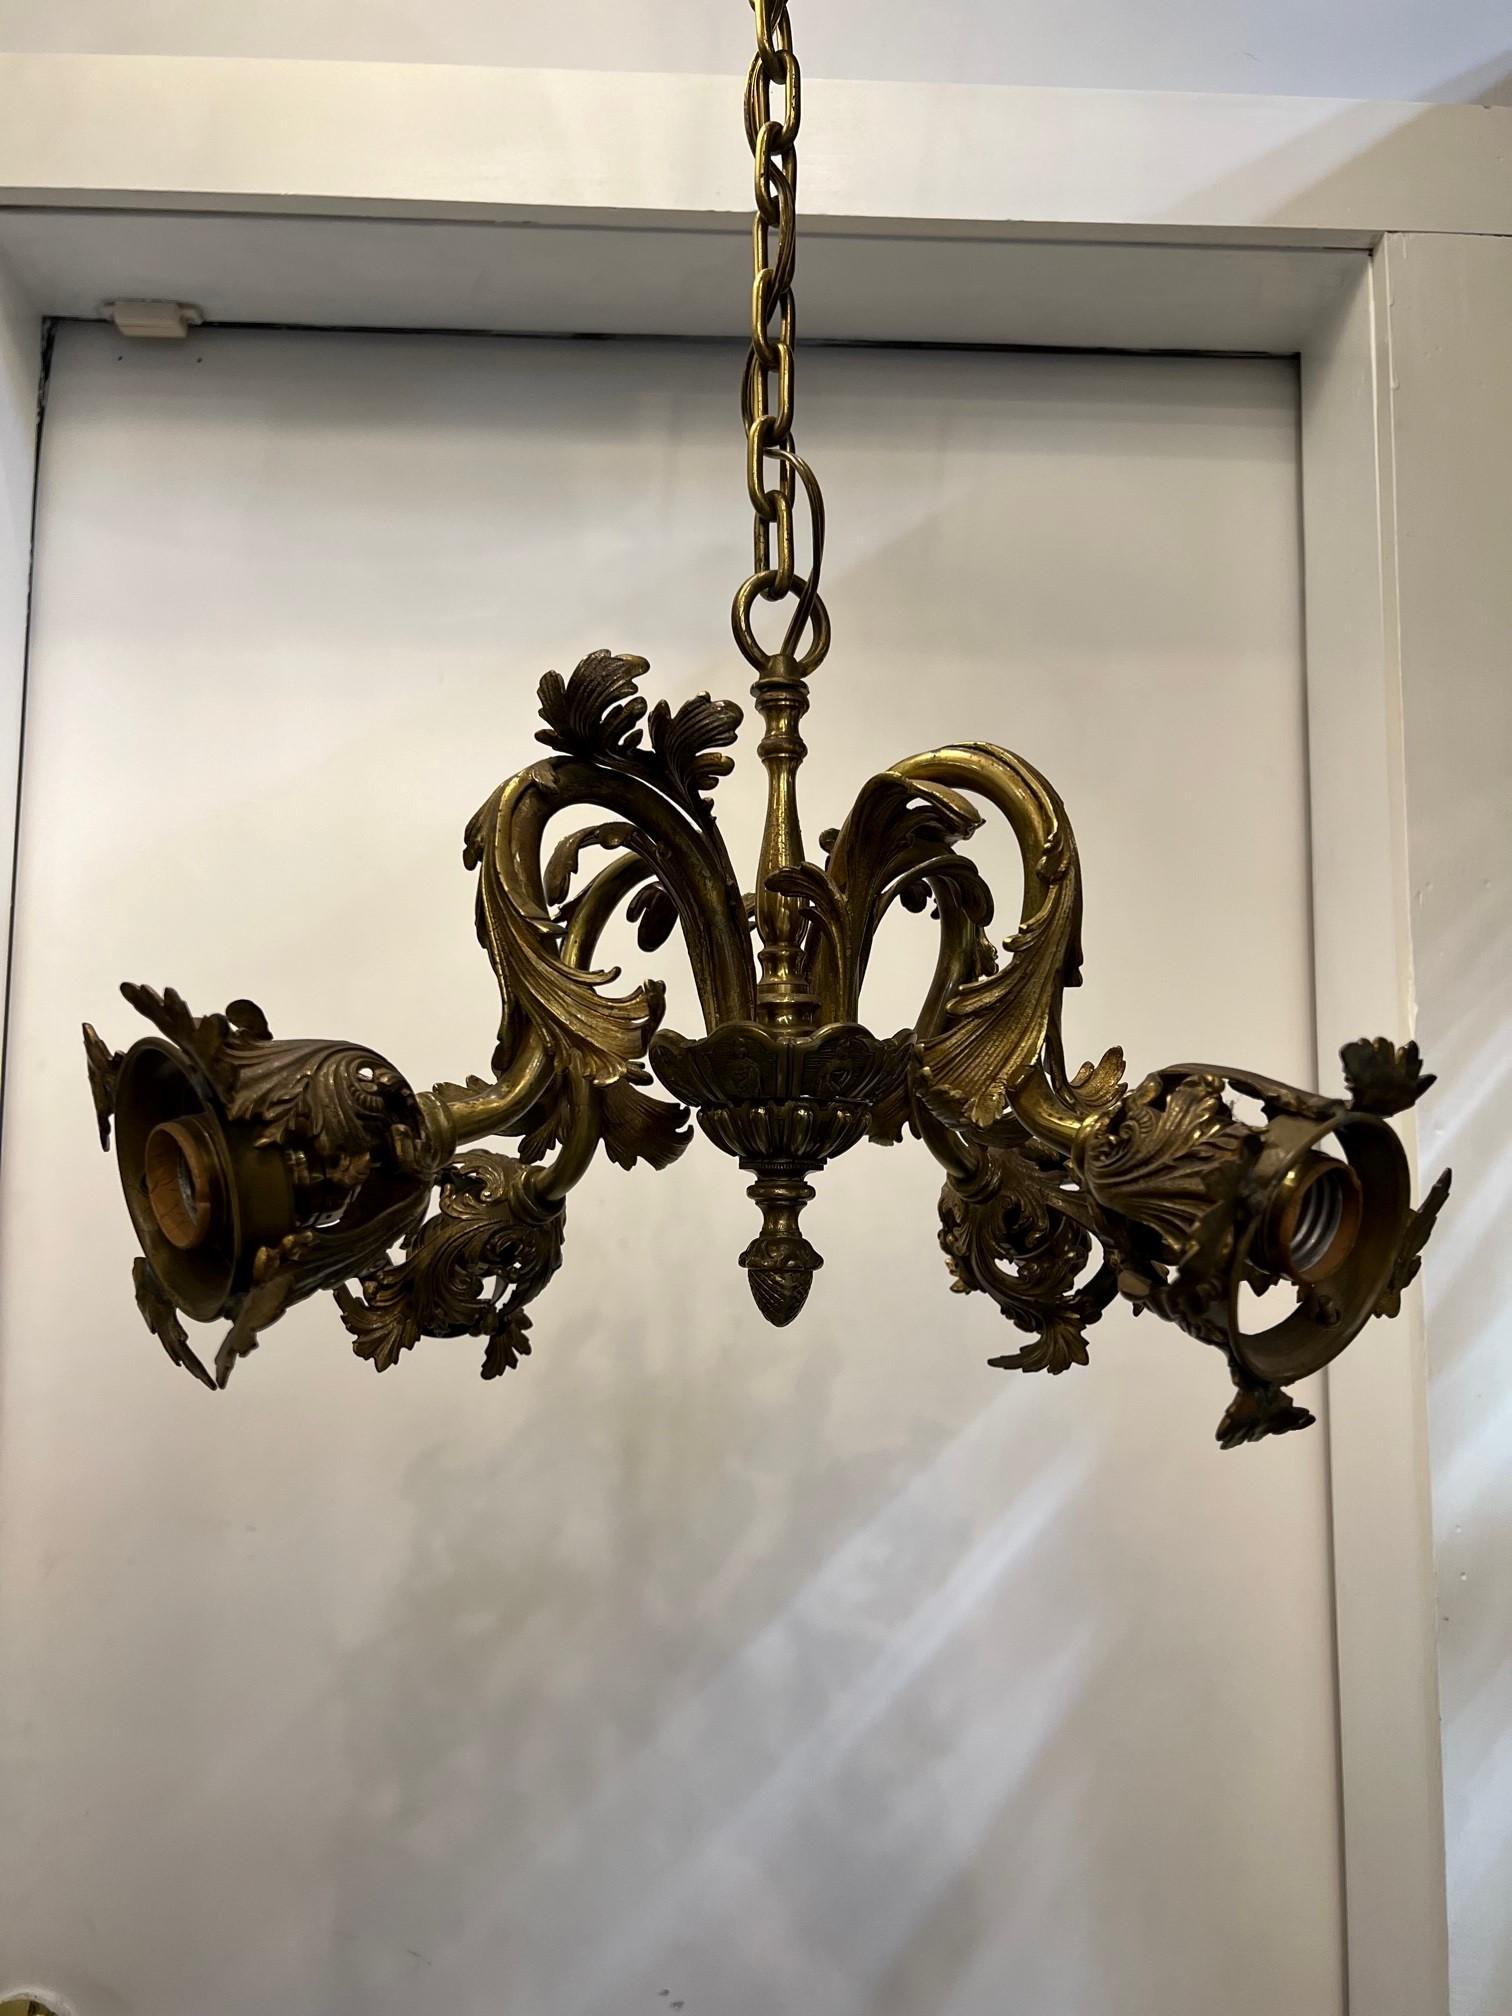 Un petit mais très beau lustre français de style Louis XVI. Quatre branches décoratives en bronze, chacune avec des prises, toutes en état de marche. Je n'ai pas les abat-jours, à l'origine il y avait quatre abat-jours en verre d'art que l'on peut